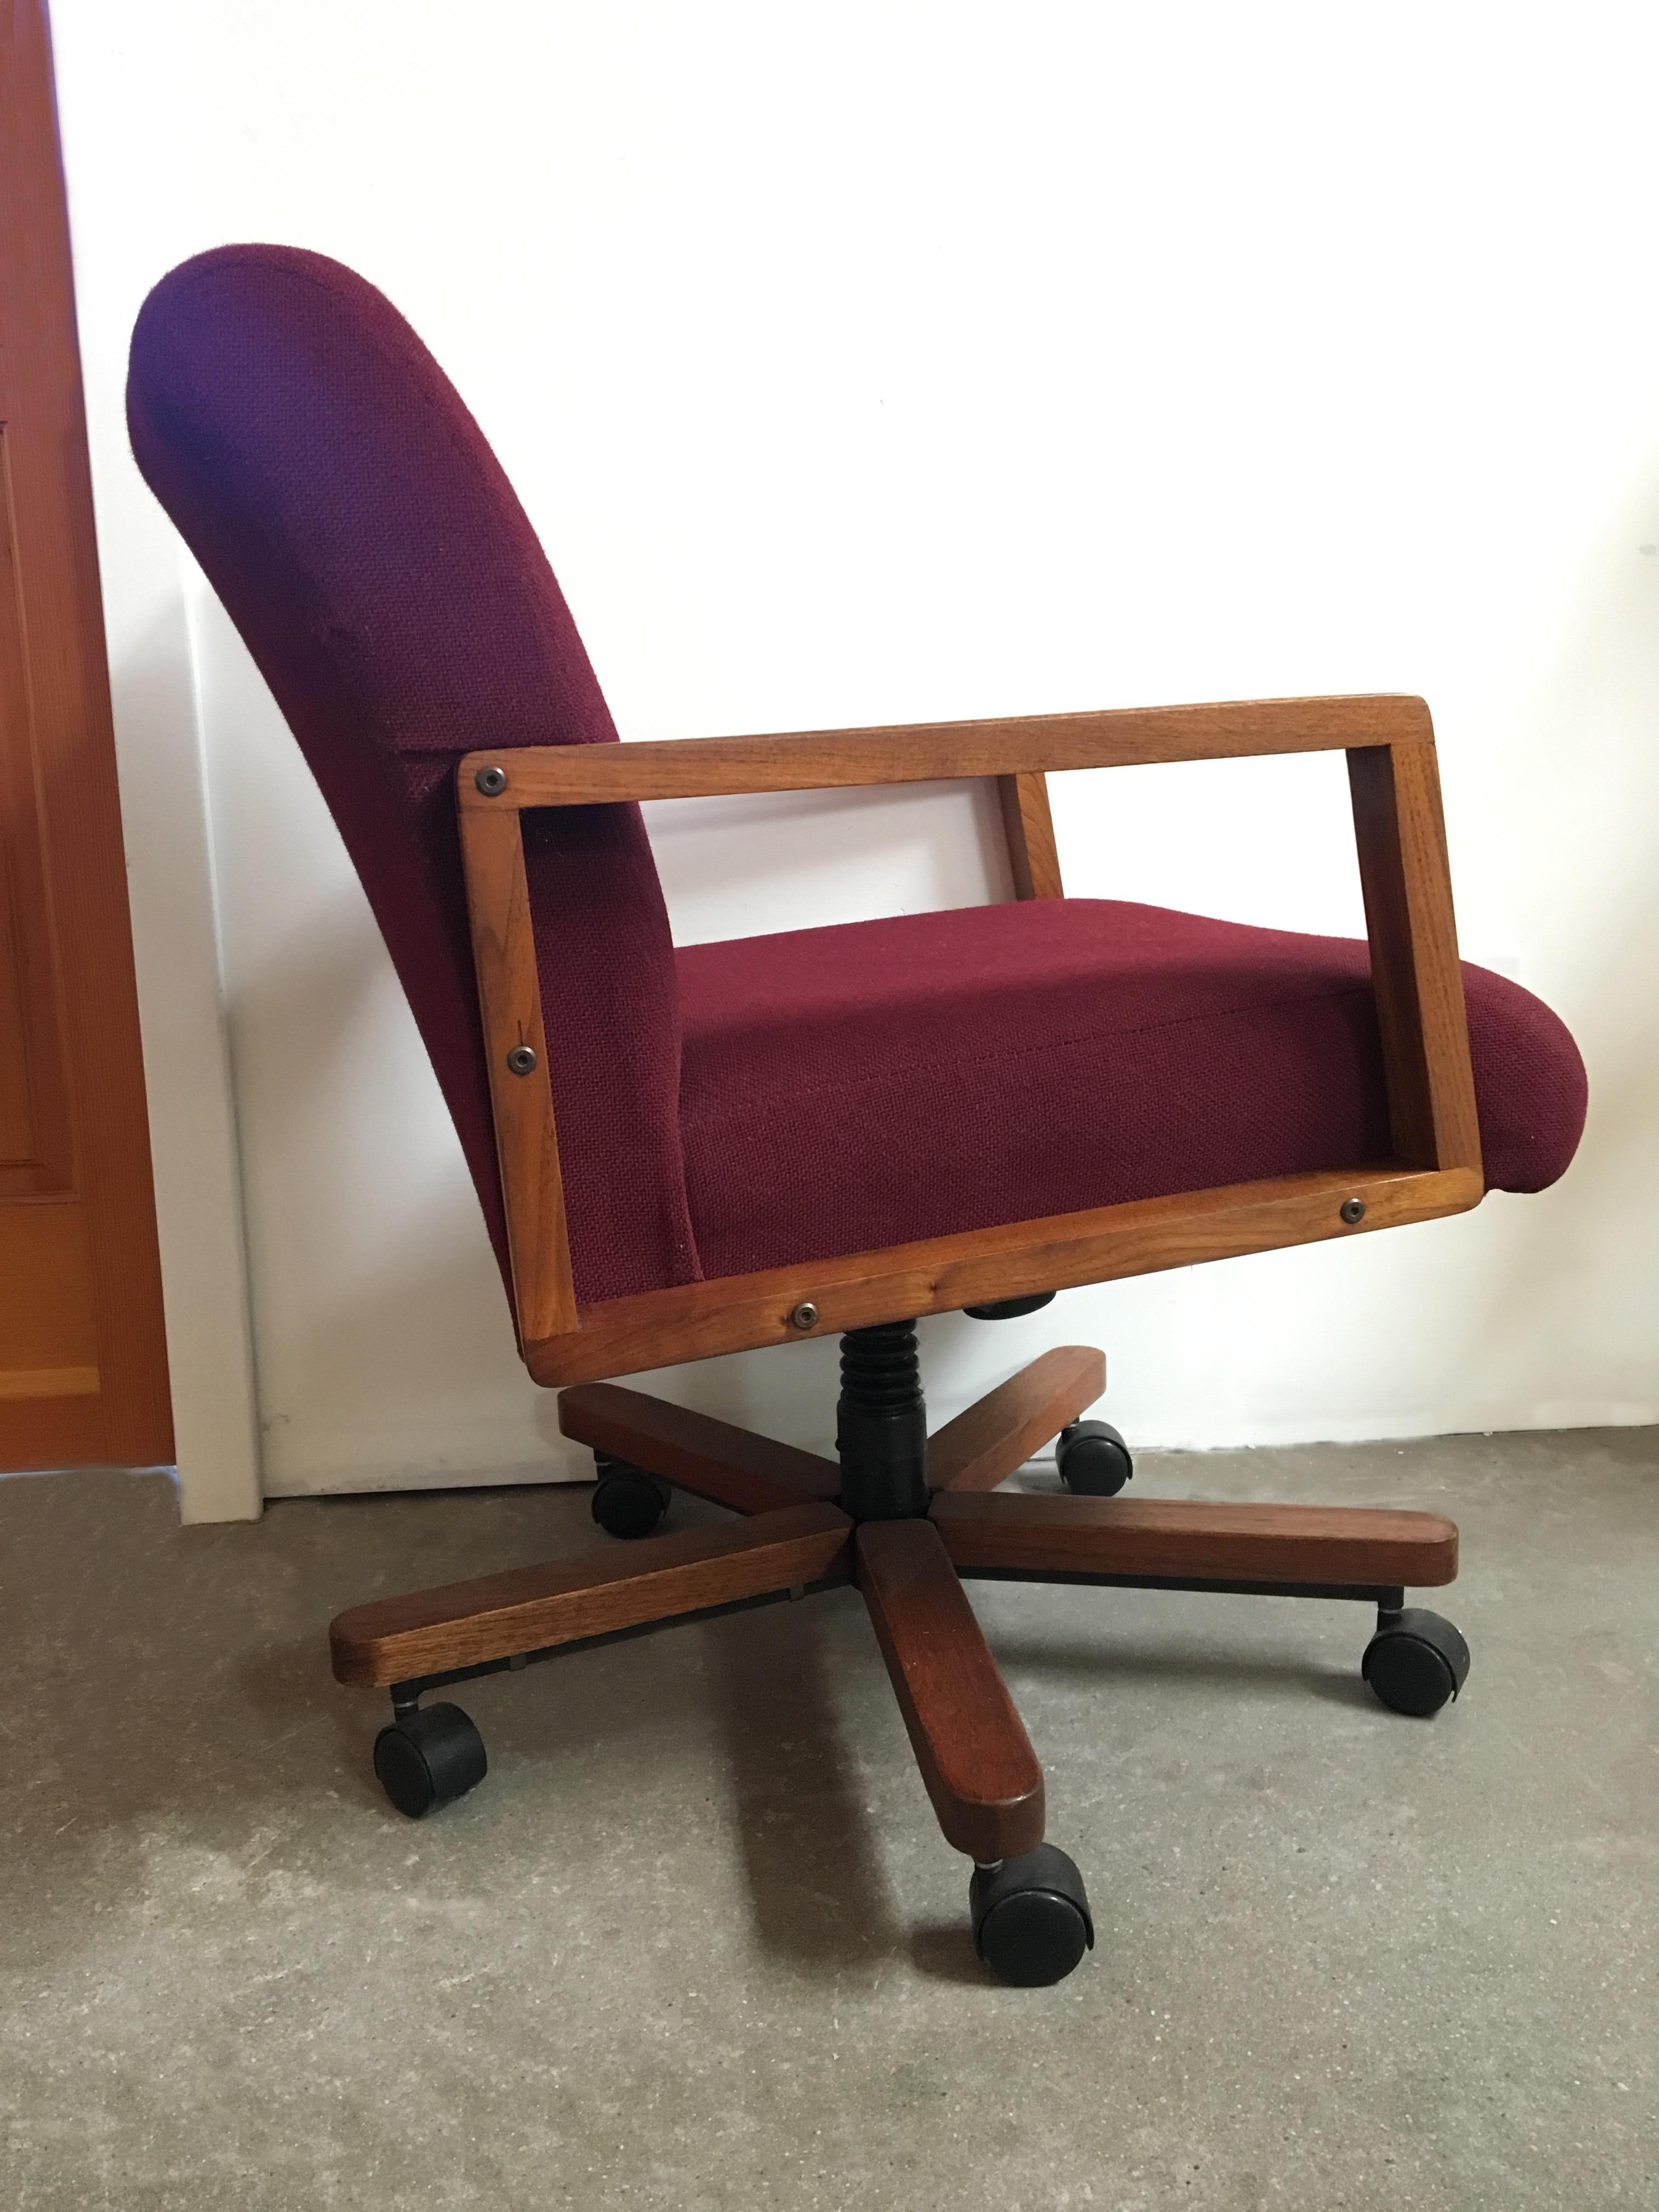 Solid walnut tilting, swiveling desk chair.